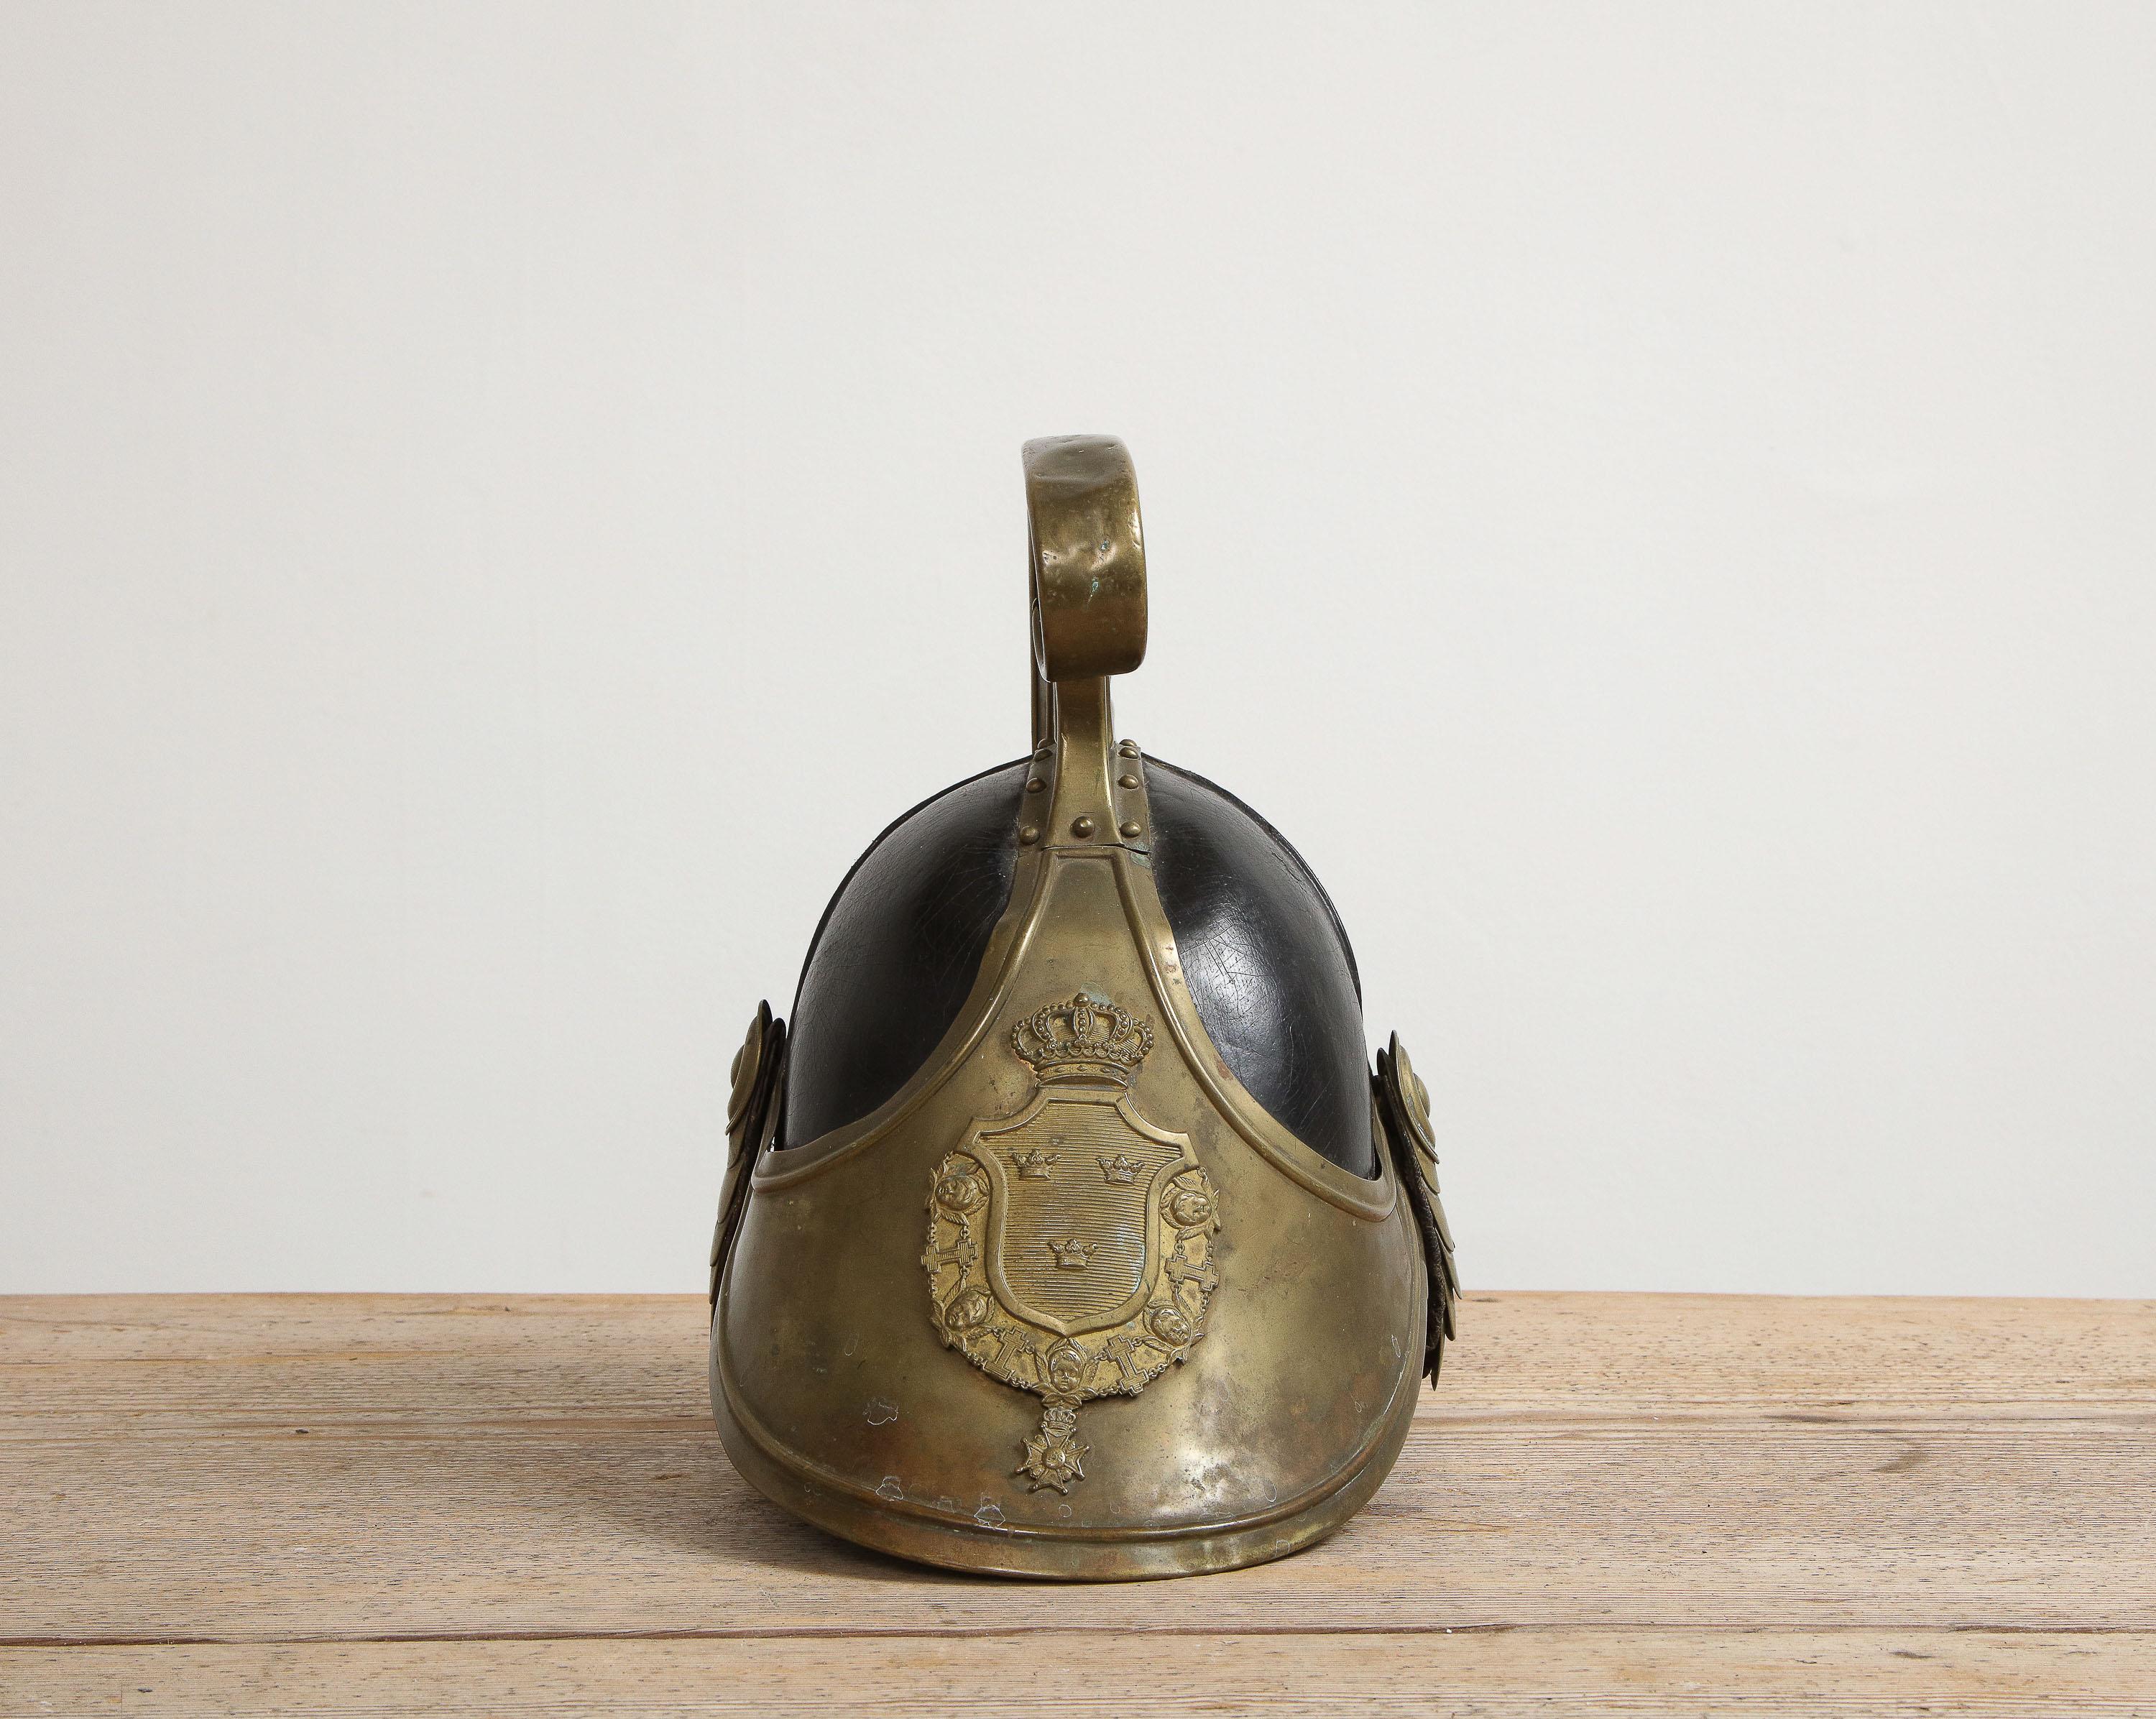 Ein schwedischer Dragonerhelm, der von einem Mitglied eines zeremoniellen Kavallerieregiments getragen wurde, Herkunft: Schweden, um 1800, ganz originales Leder und Messingplatte 

Dieser Helm ist mit einer Messingplatte verziert, die ein Wappen mit